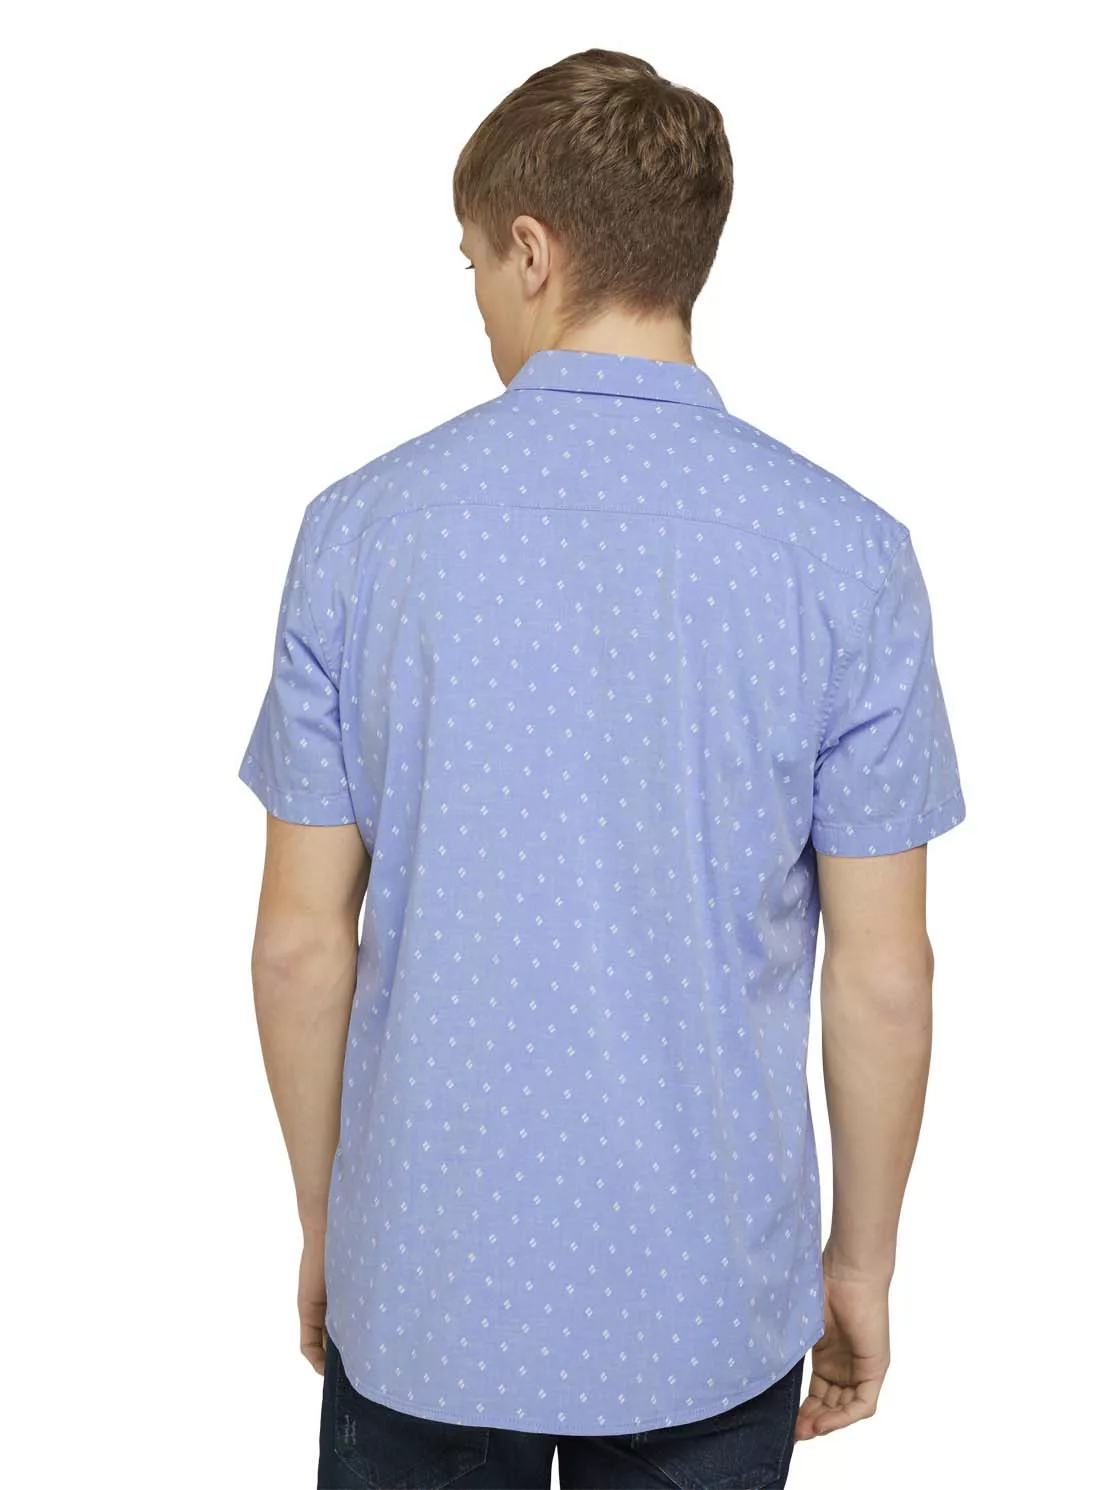 Tom Tailor Denim Herren Kurzarm Hemd Patterned Stretch günstig online kaufen